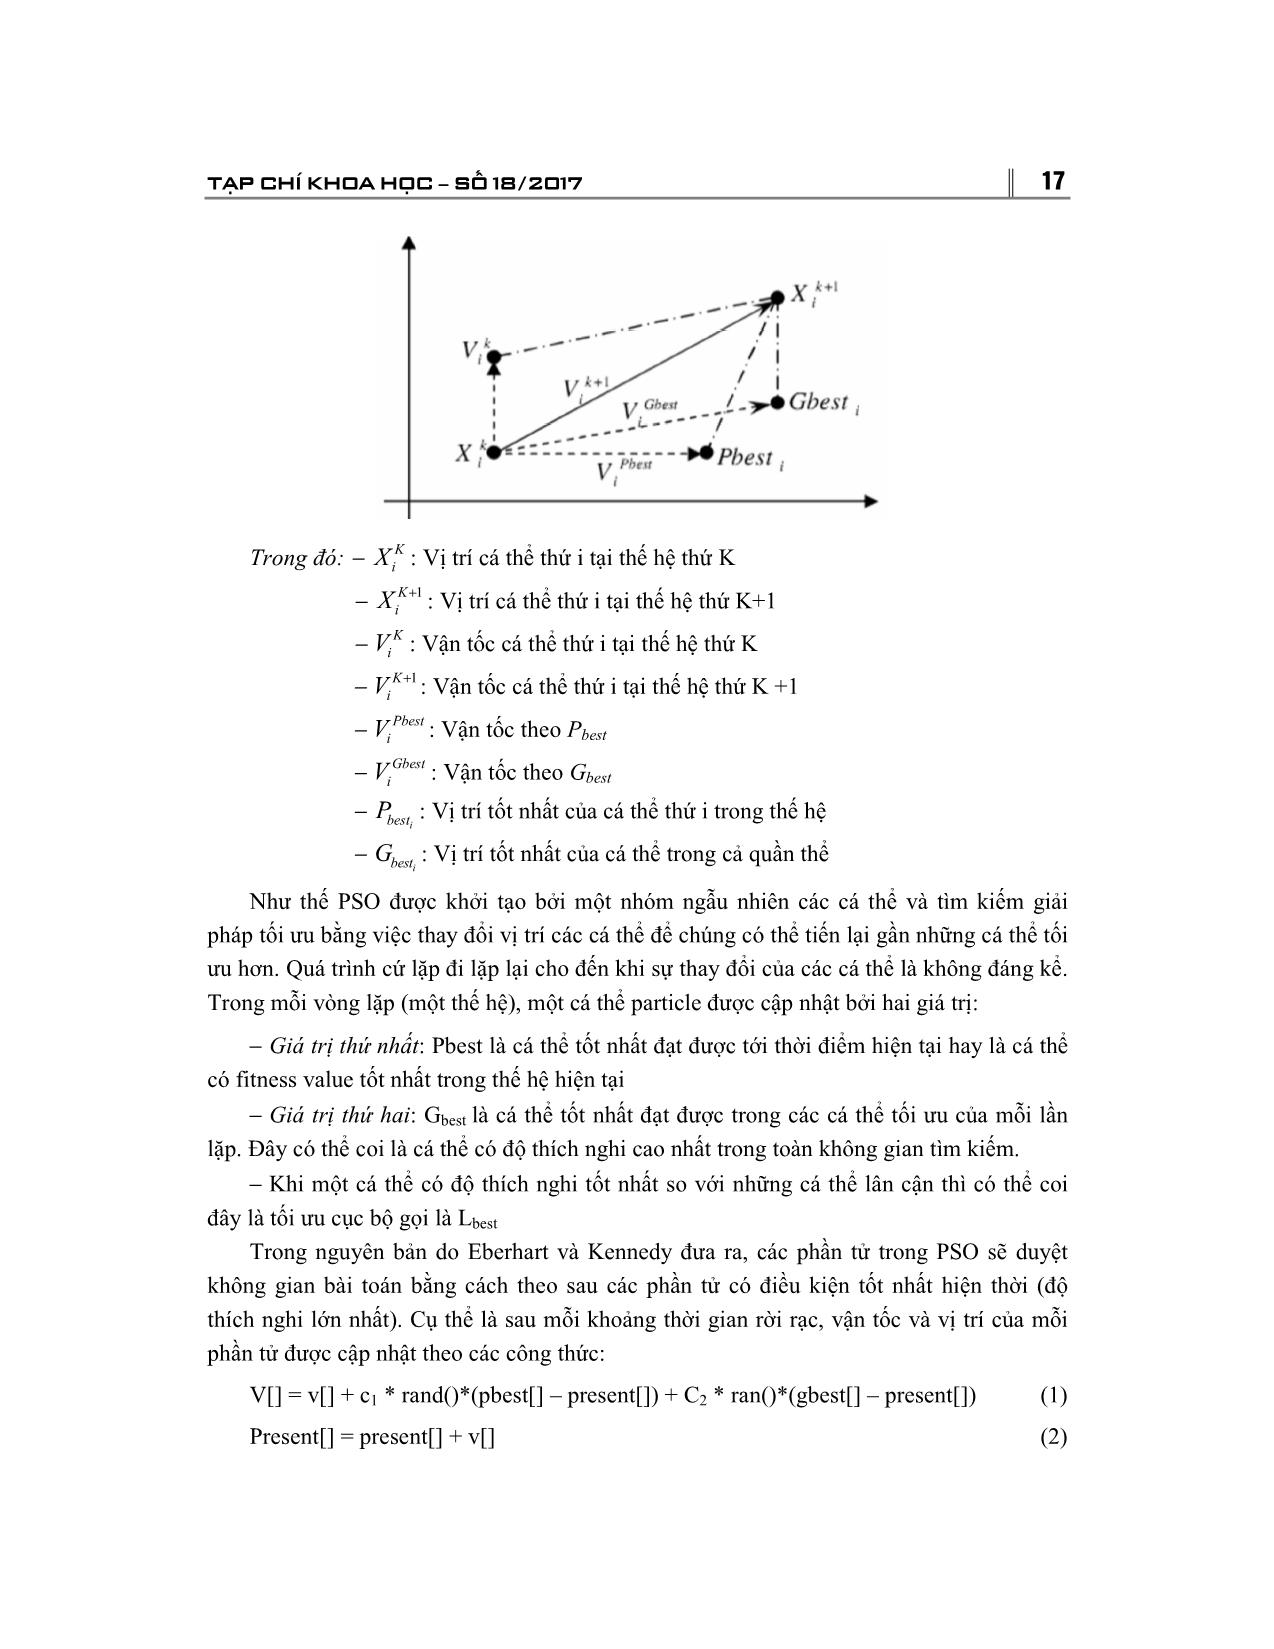 Ứng dụng giải thuật tối ưu bầy đàn vào bài toán cực tiểu hóa độ trễ trang 3